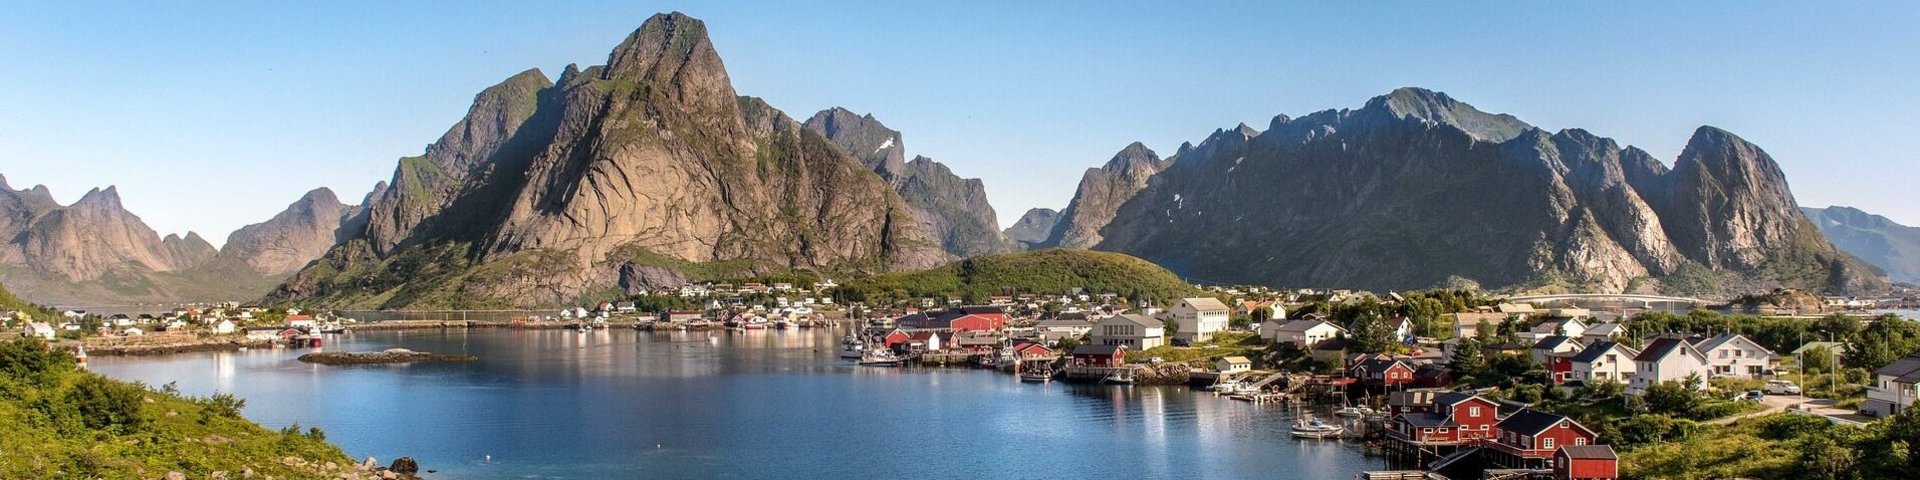 Traumlandschaft der Lofoten in Norwegen